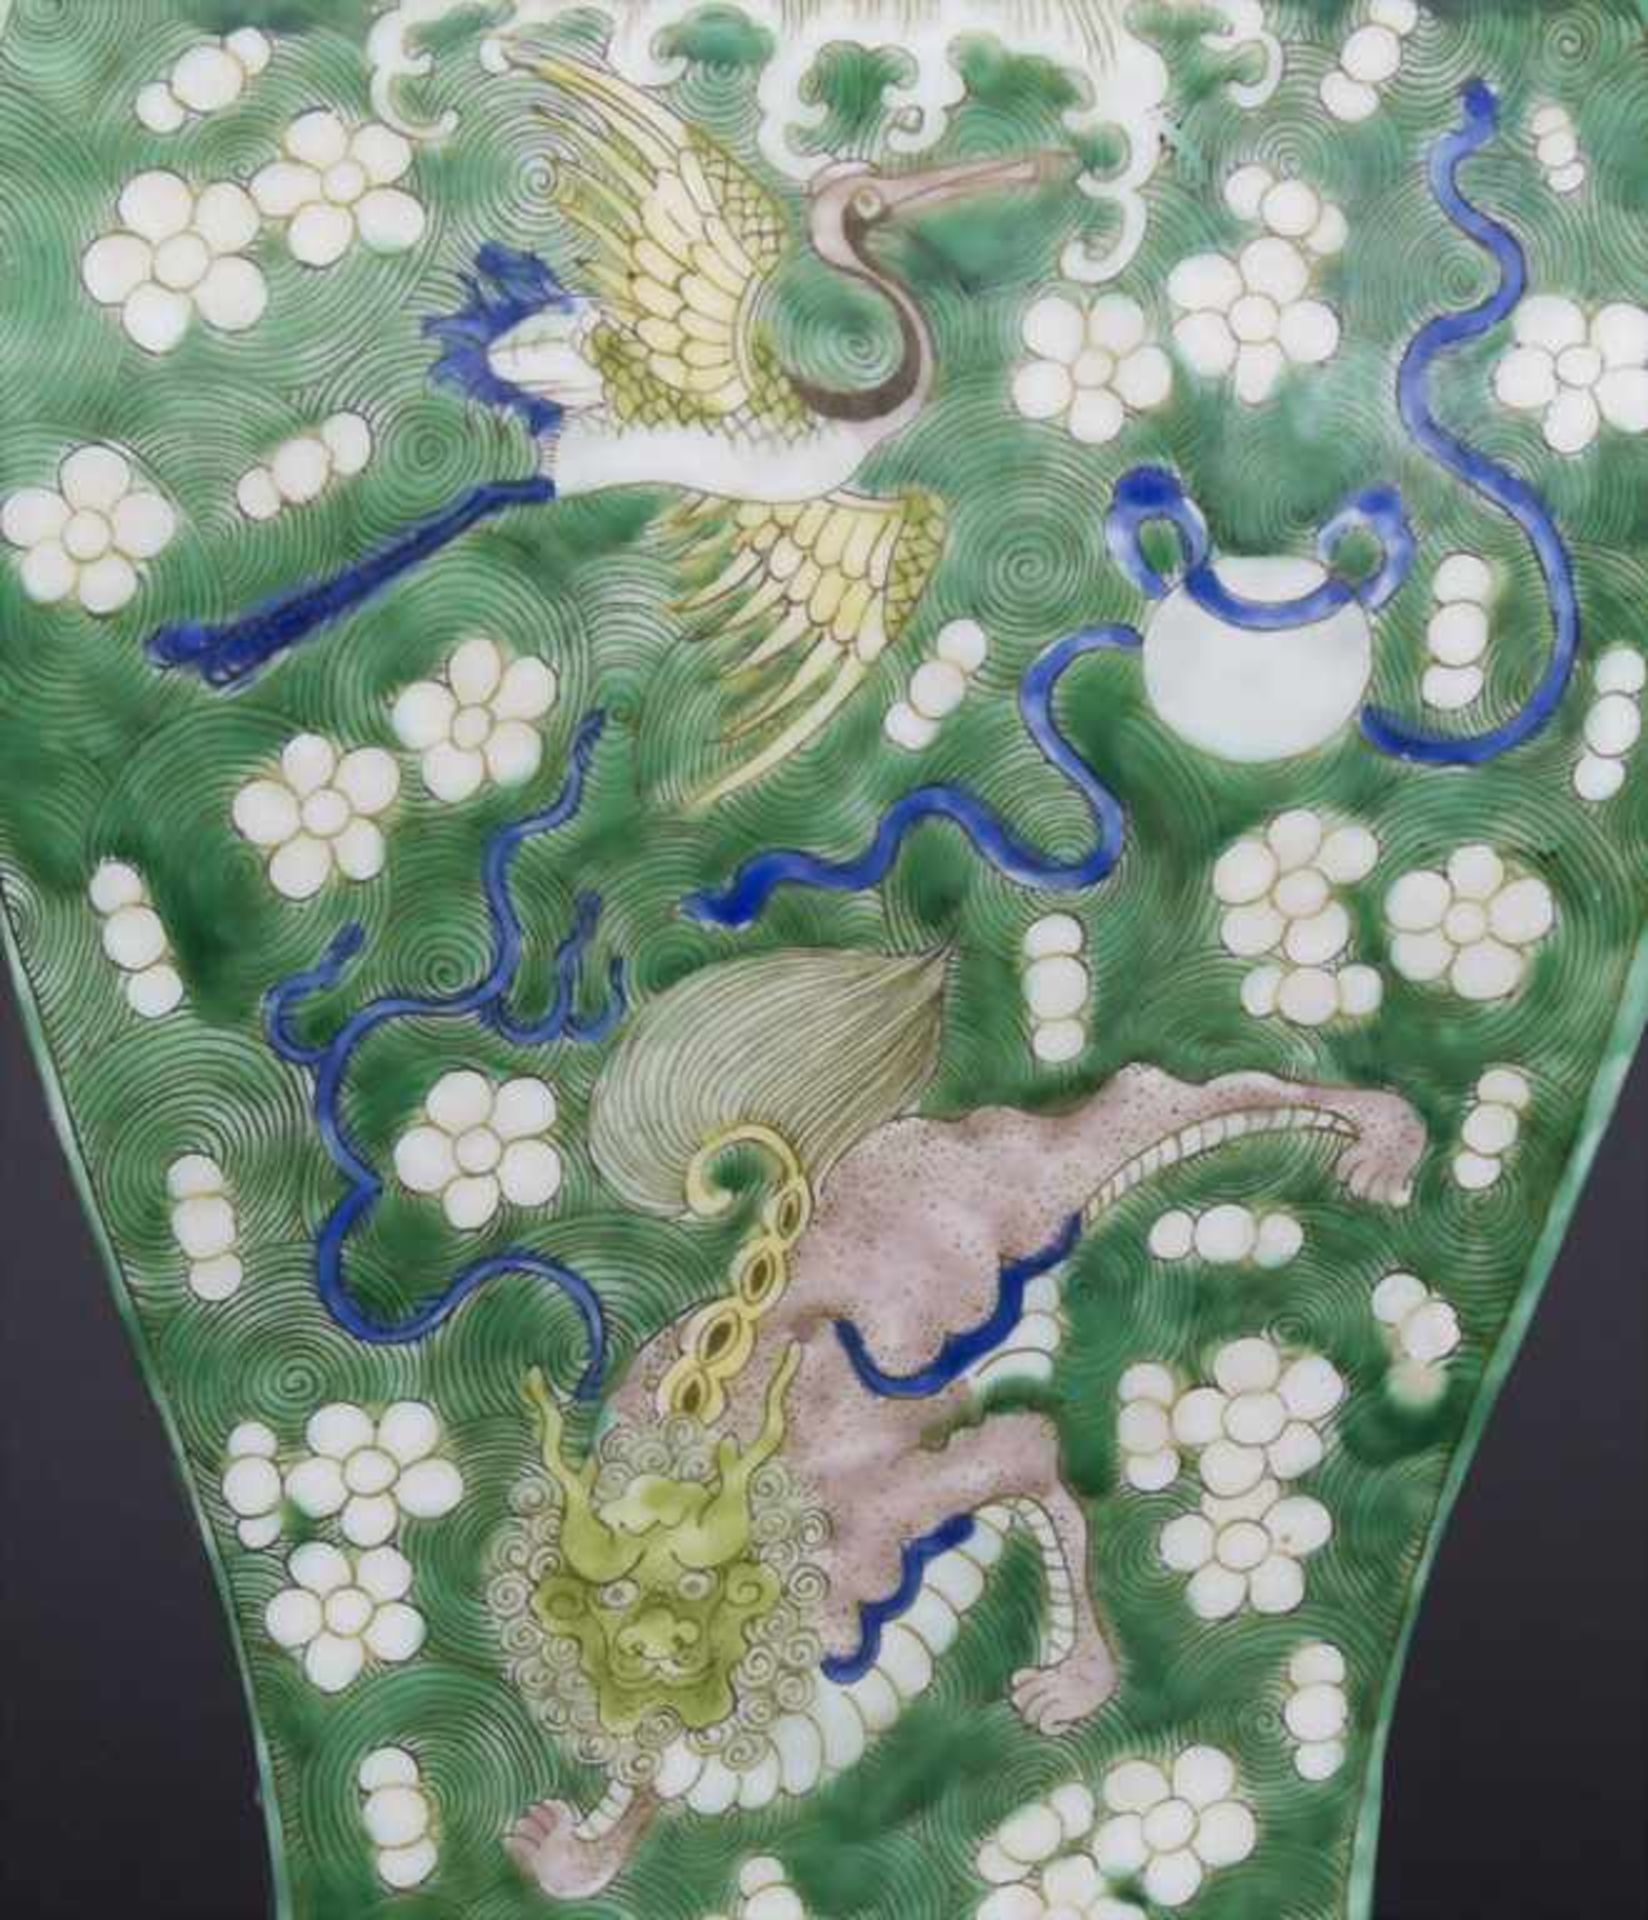 Ziervase, China, späte Qing-Dynastie, 19./20. Jh.Material: Porzellan, polychrom bemalt,Marke/ - Bild 5 aus 17